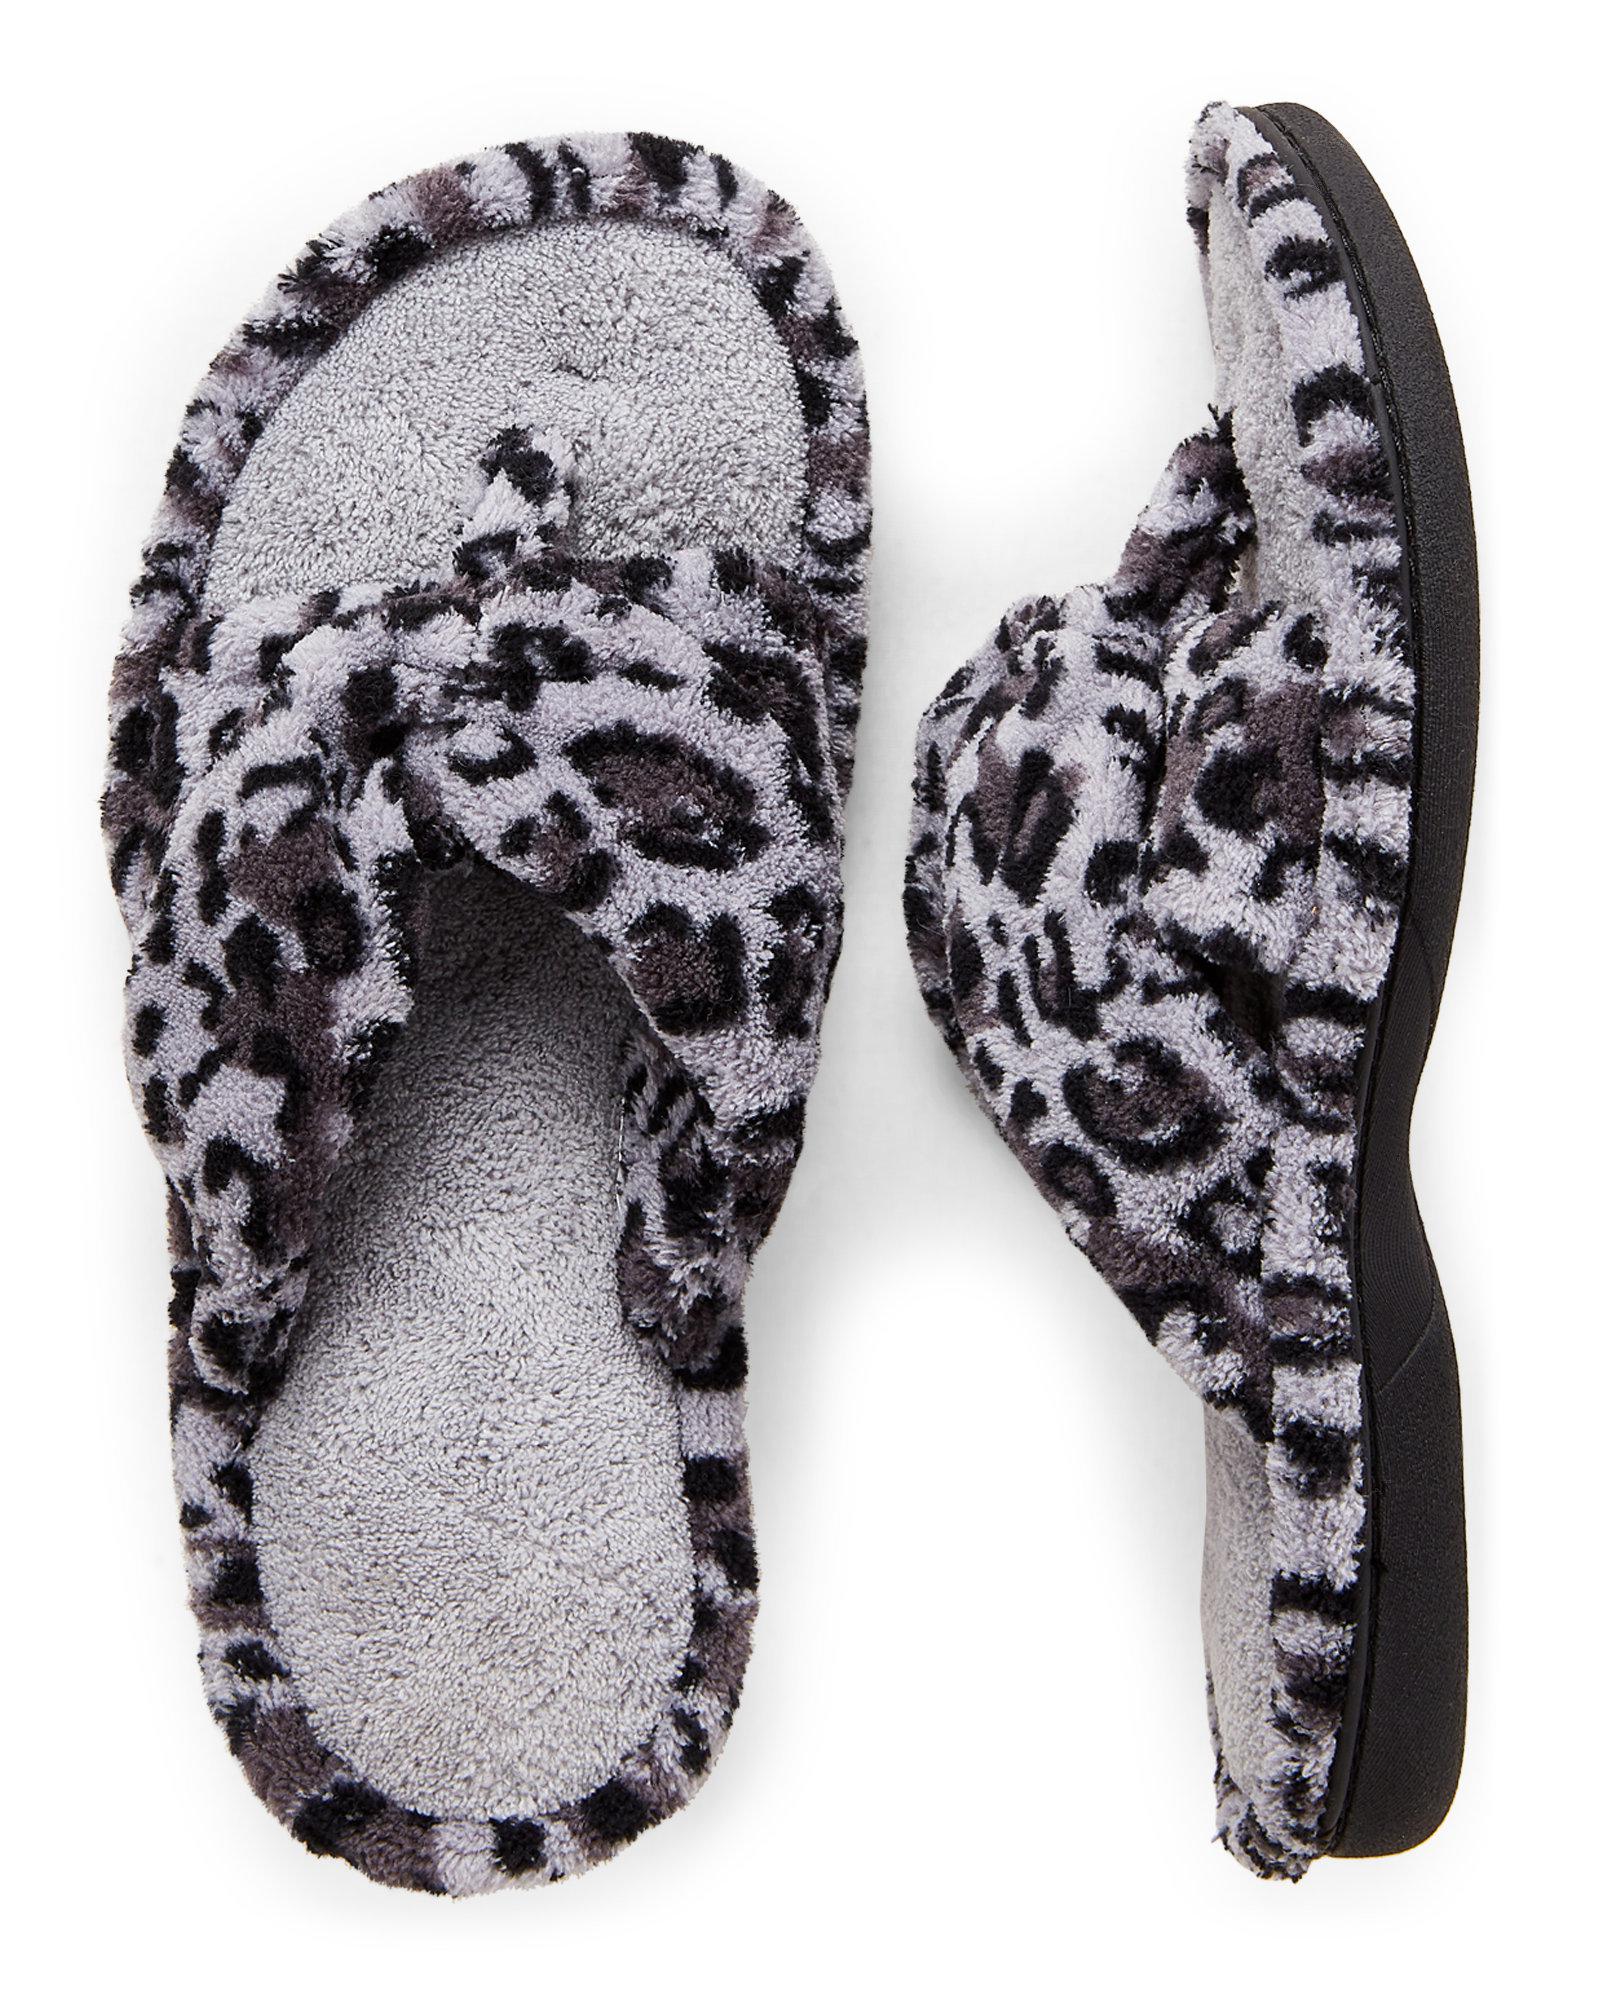 dearfoam leopard thong slippers